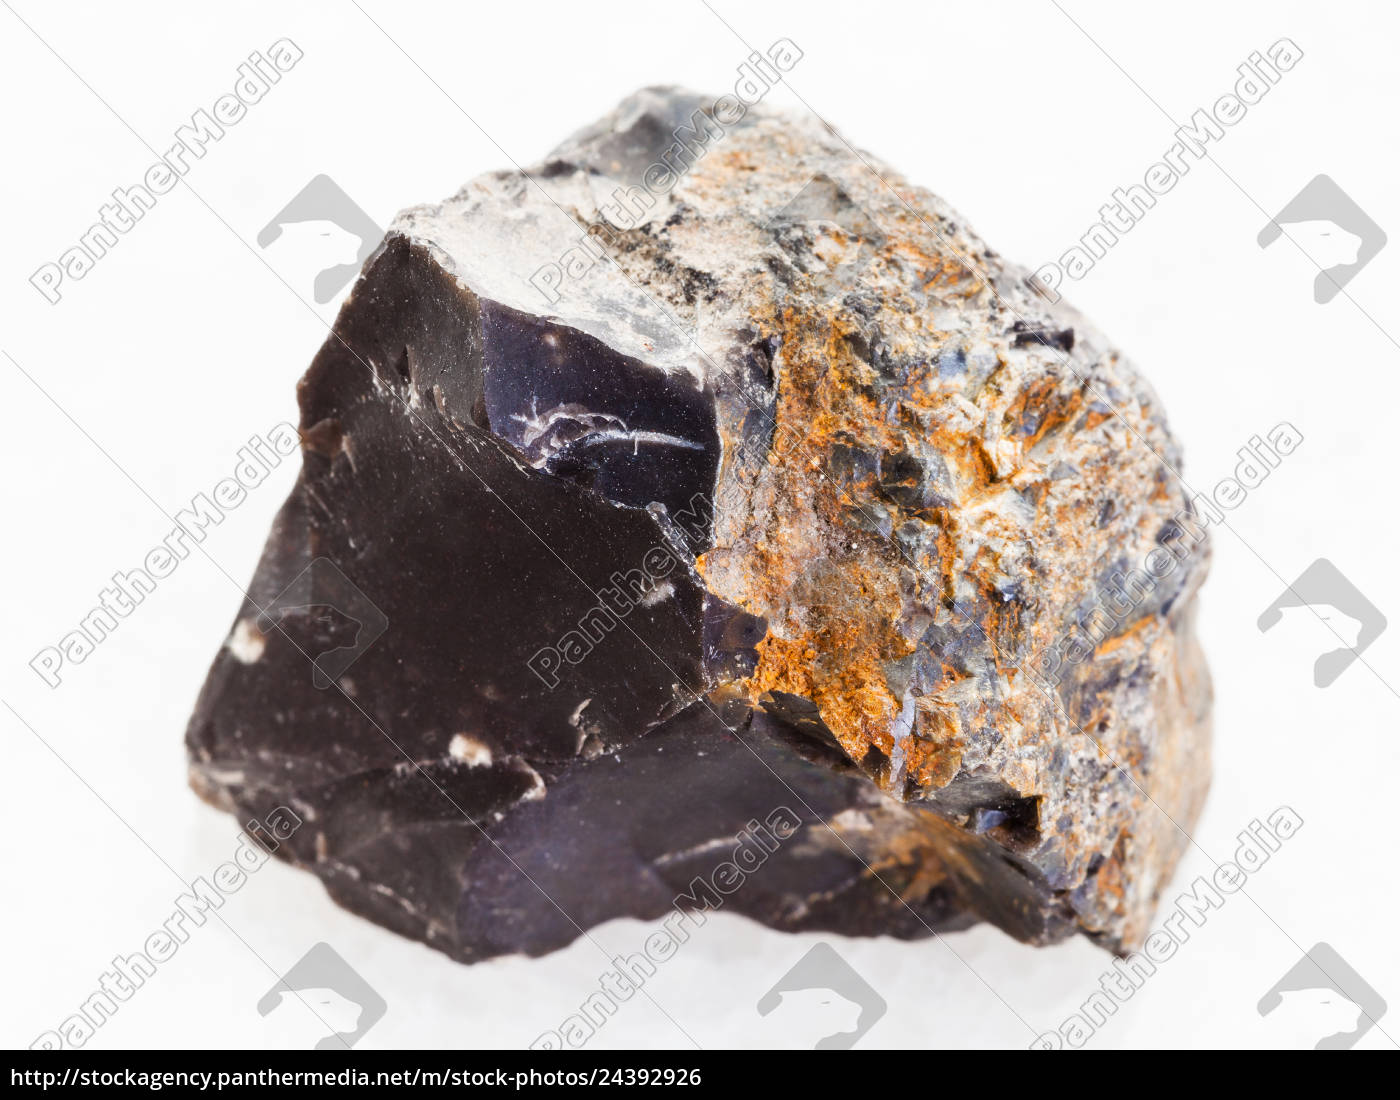 pietra focaia nera grezza su marmo bianco - Stockphoto #24392926